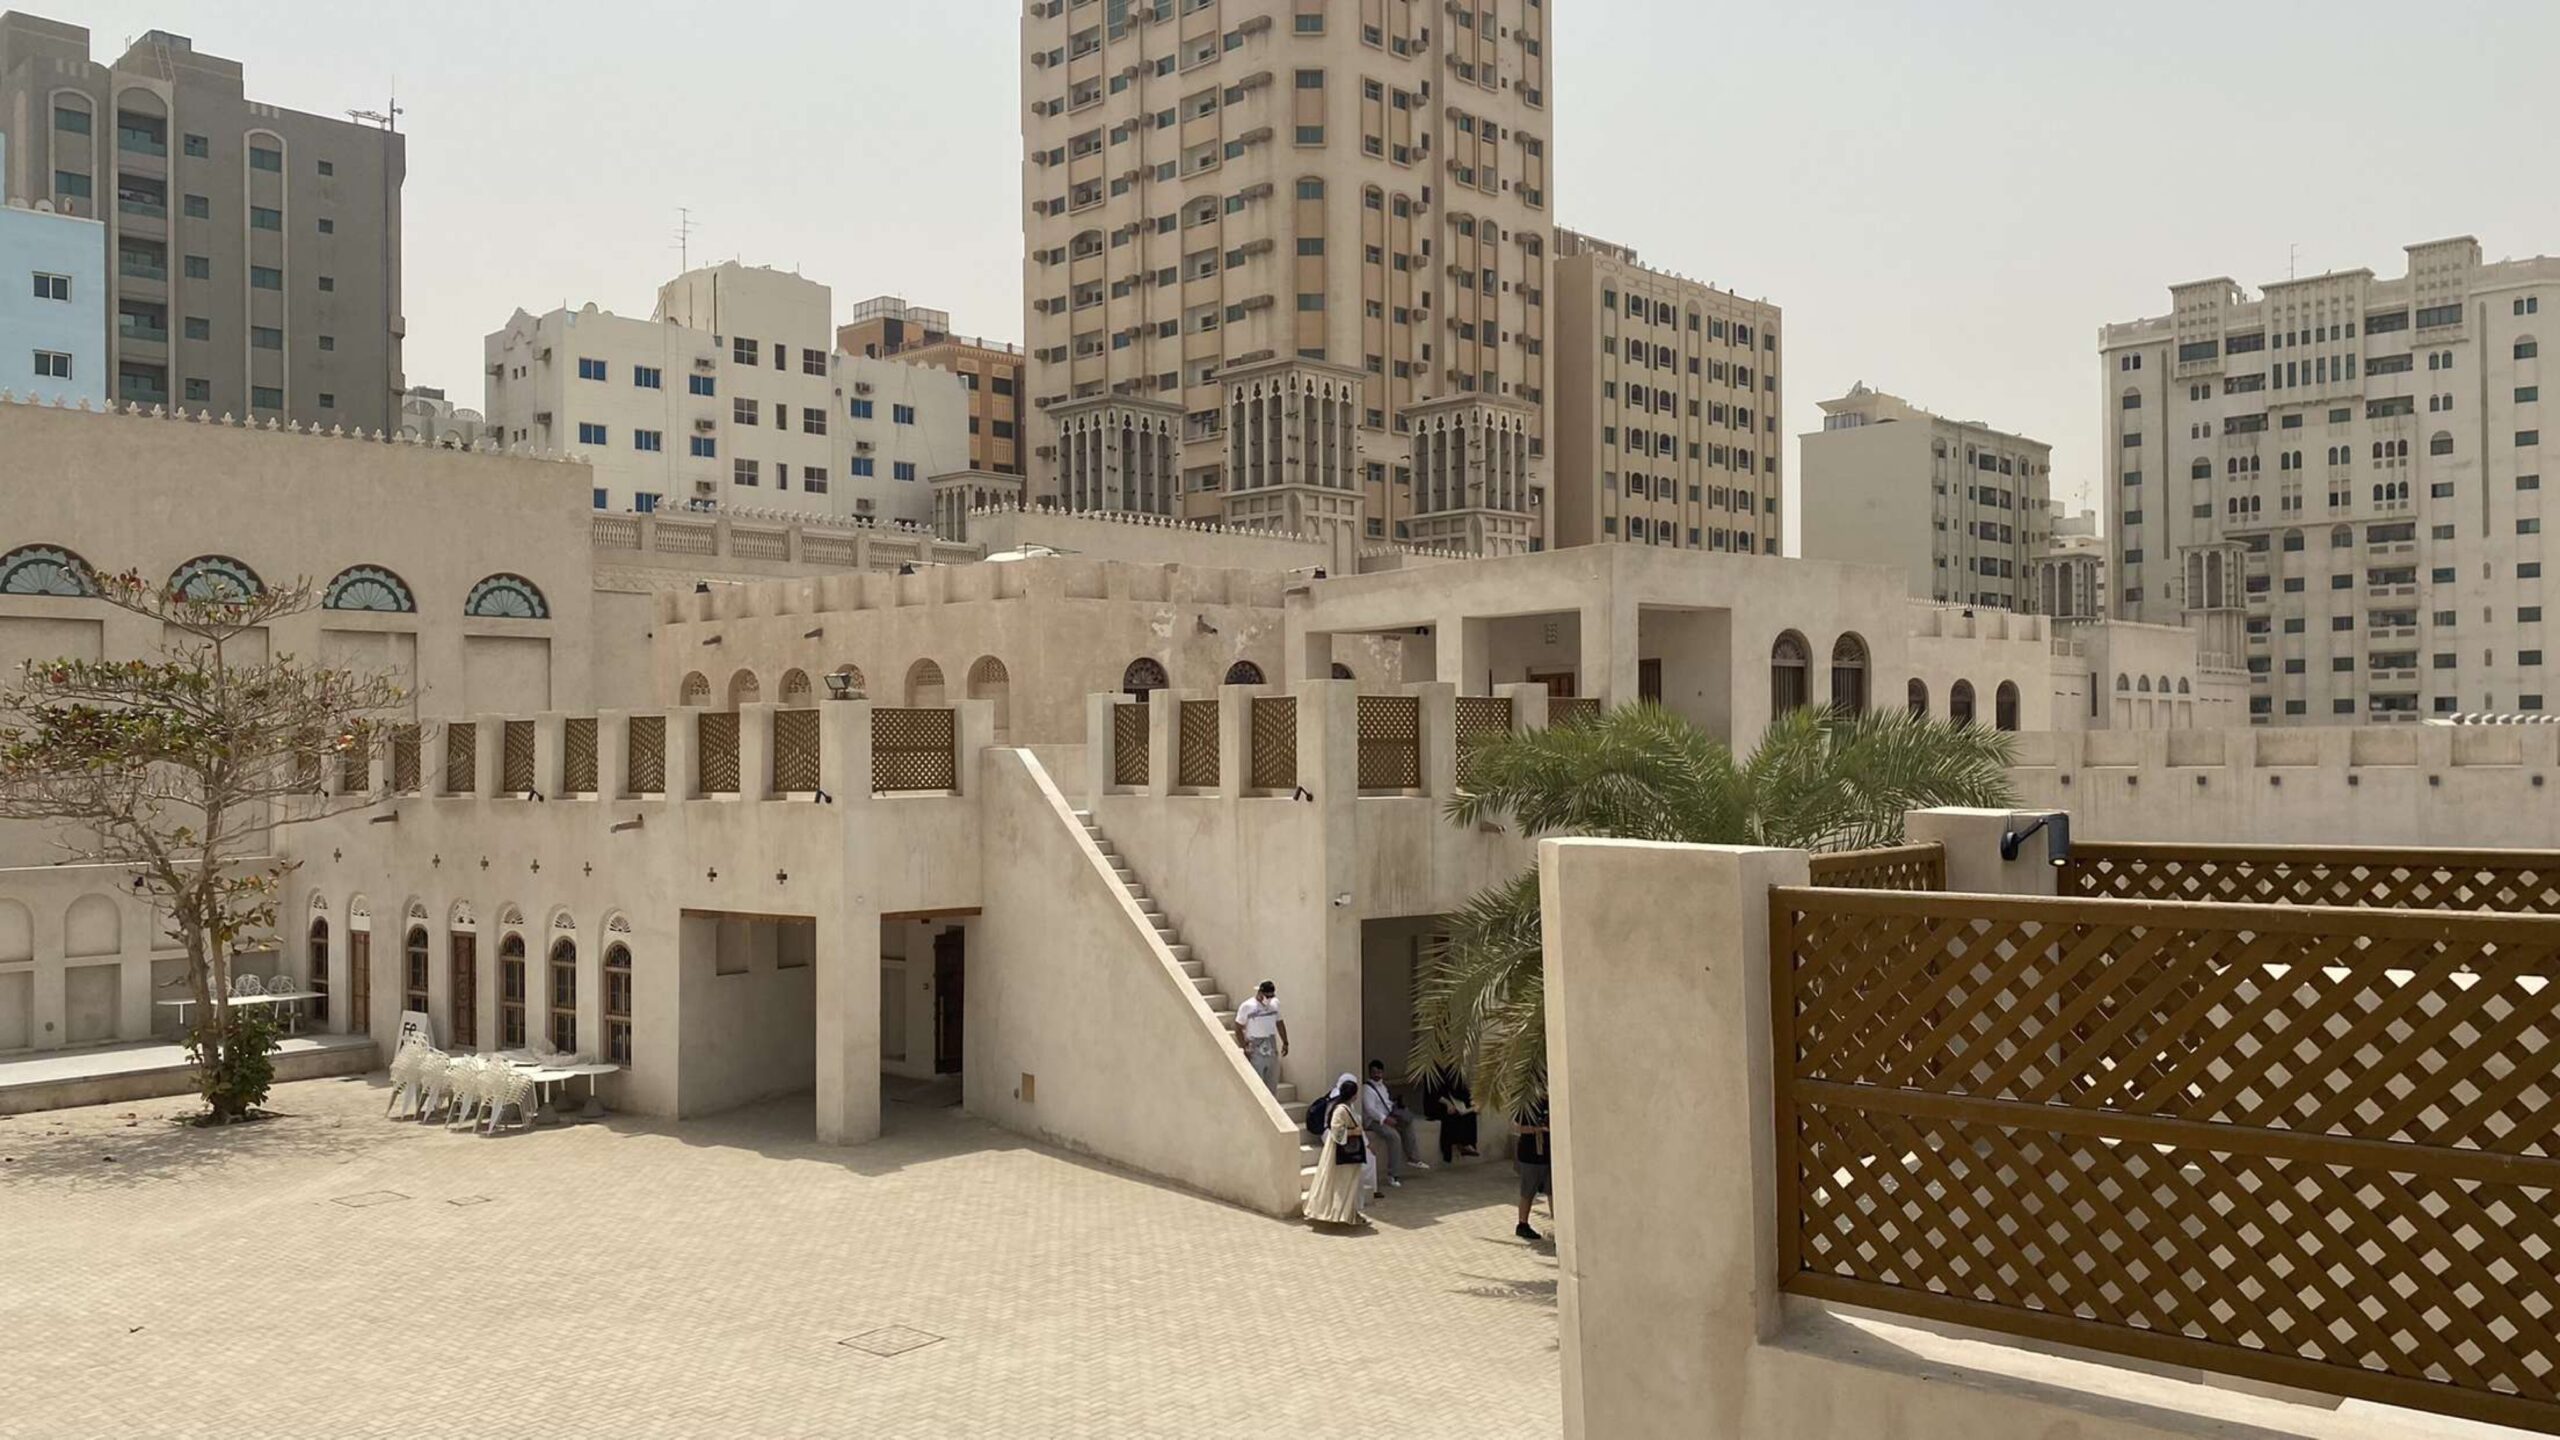 Site of the Sharjah Bienniale